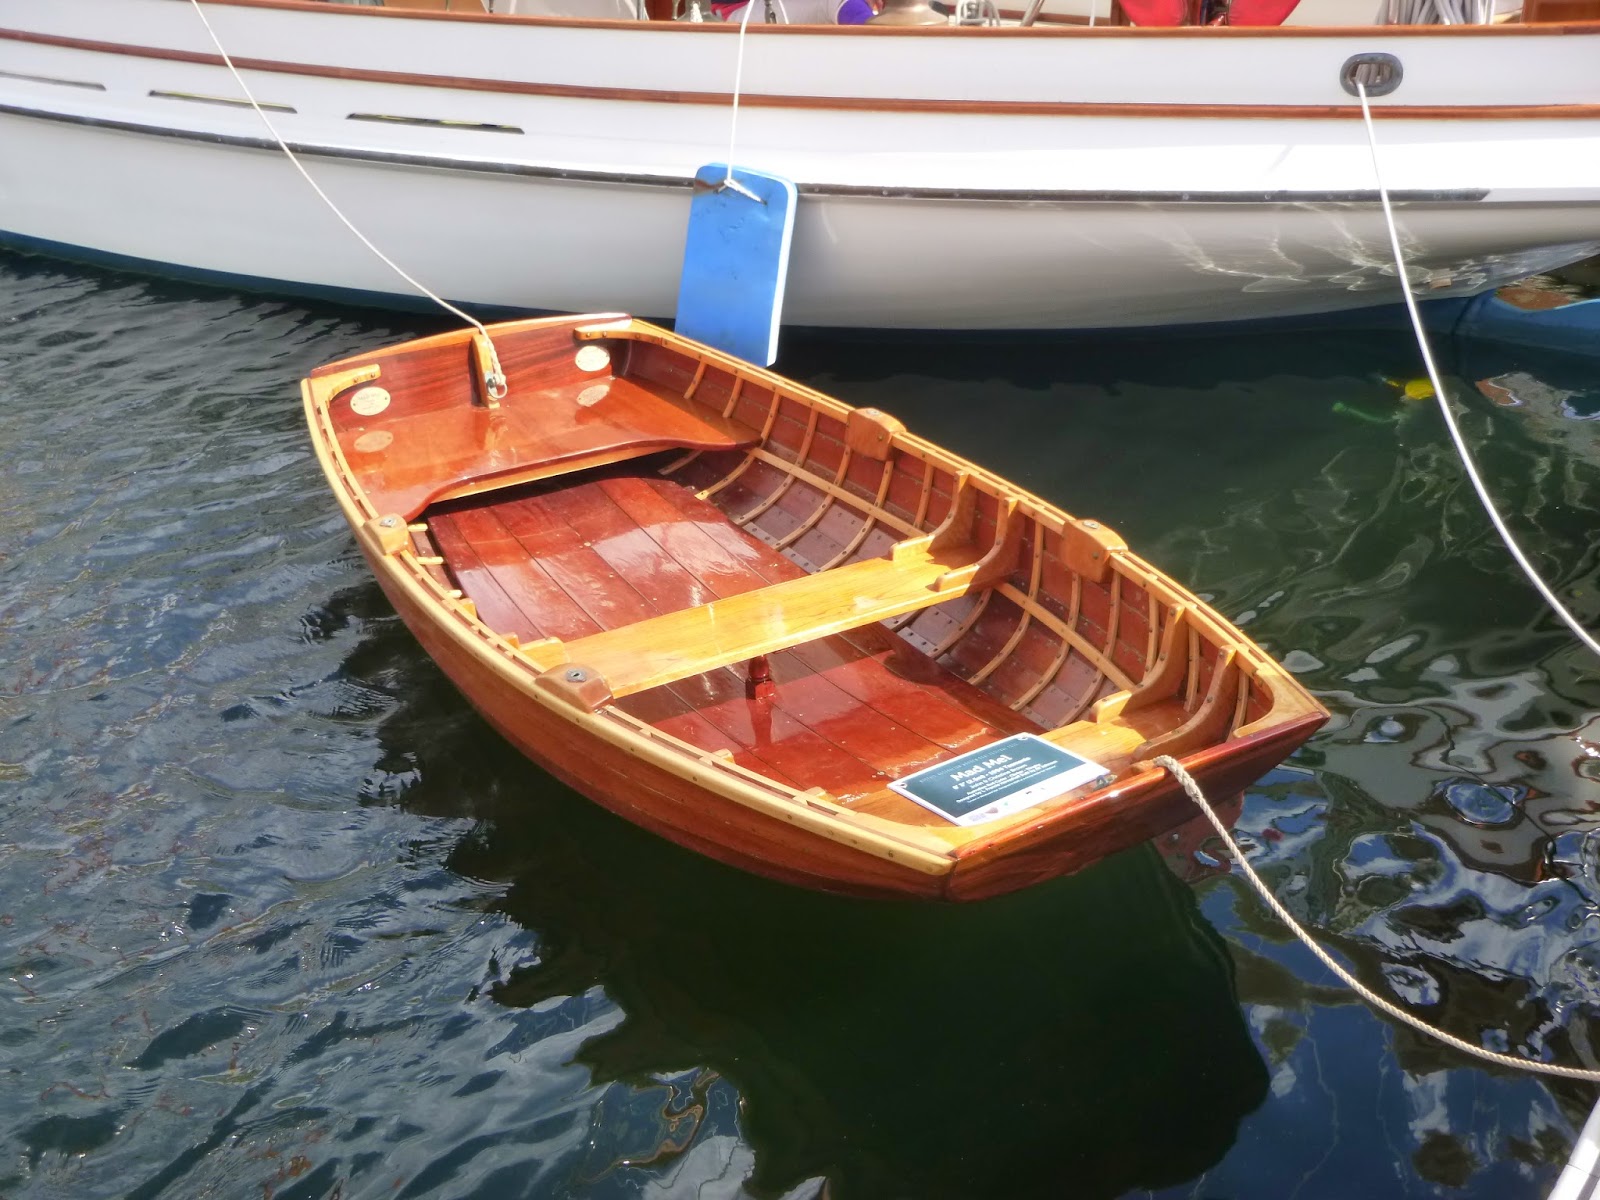 hobart wooden boat festival 2015